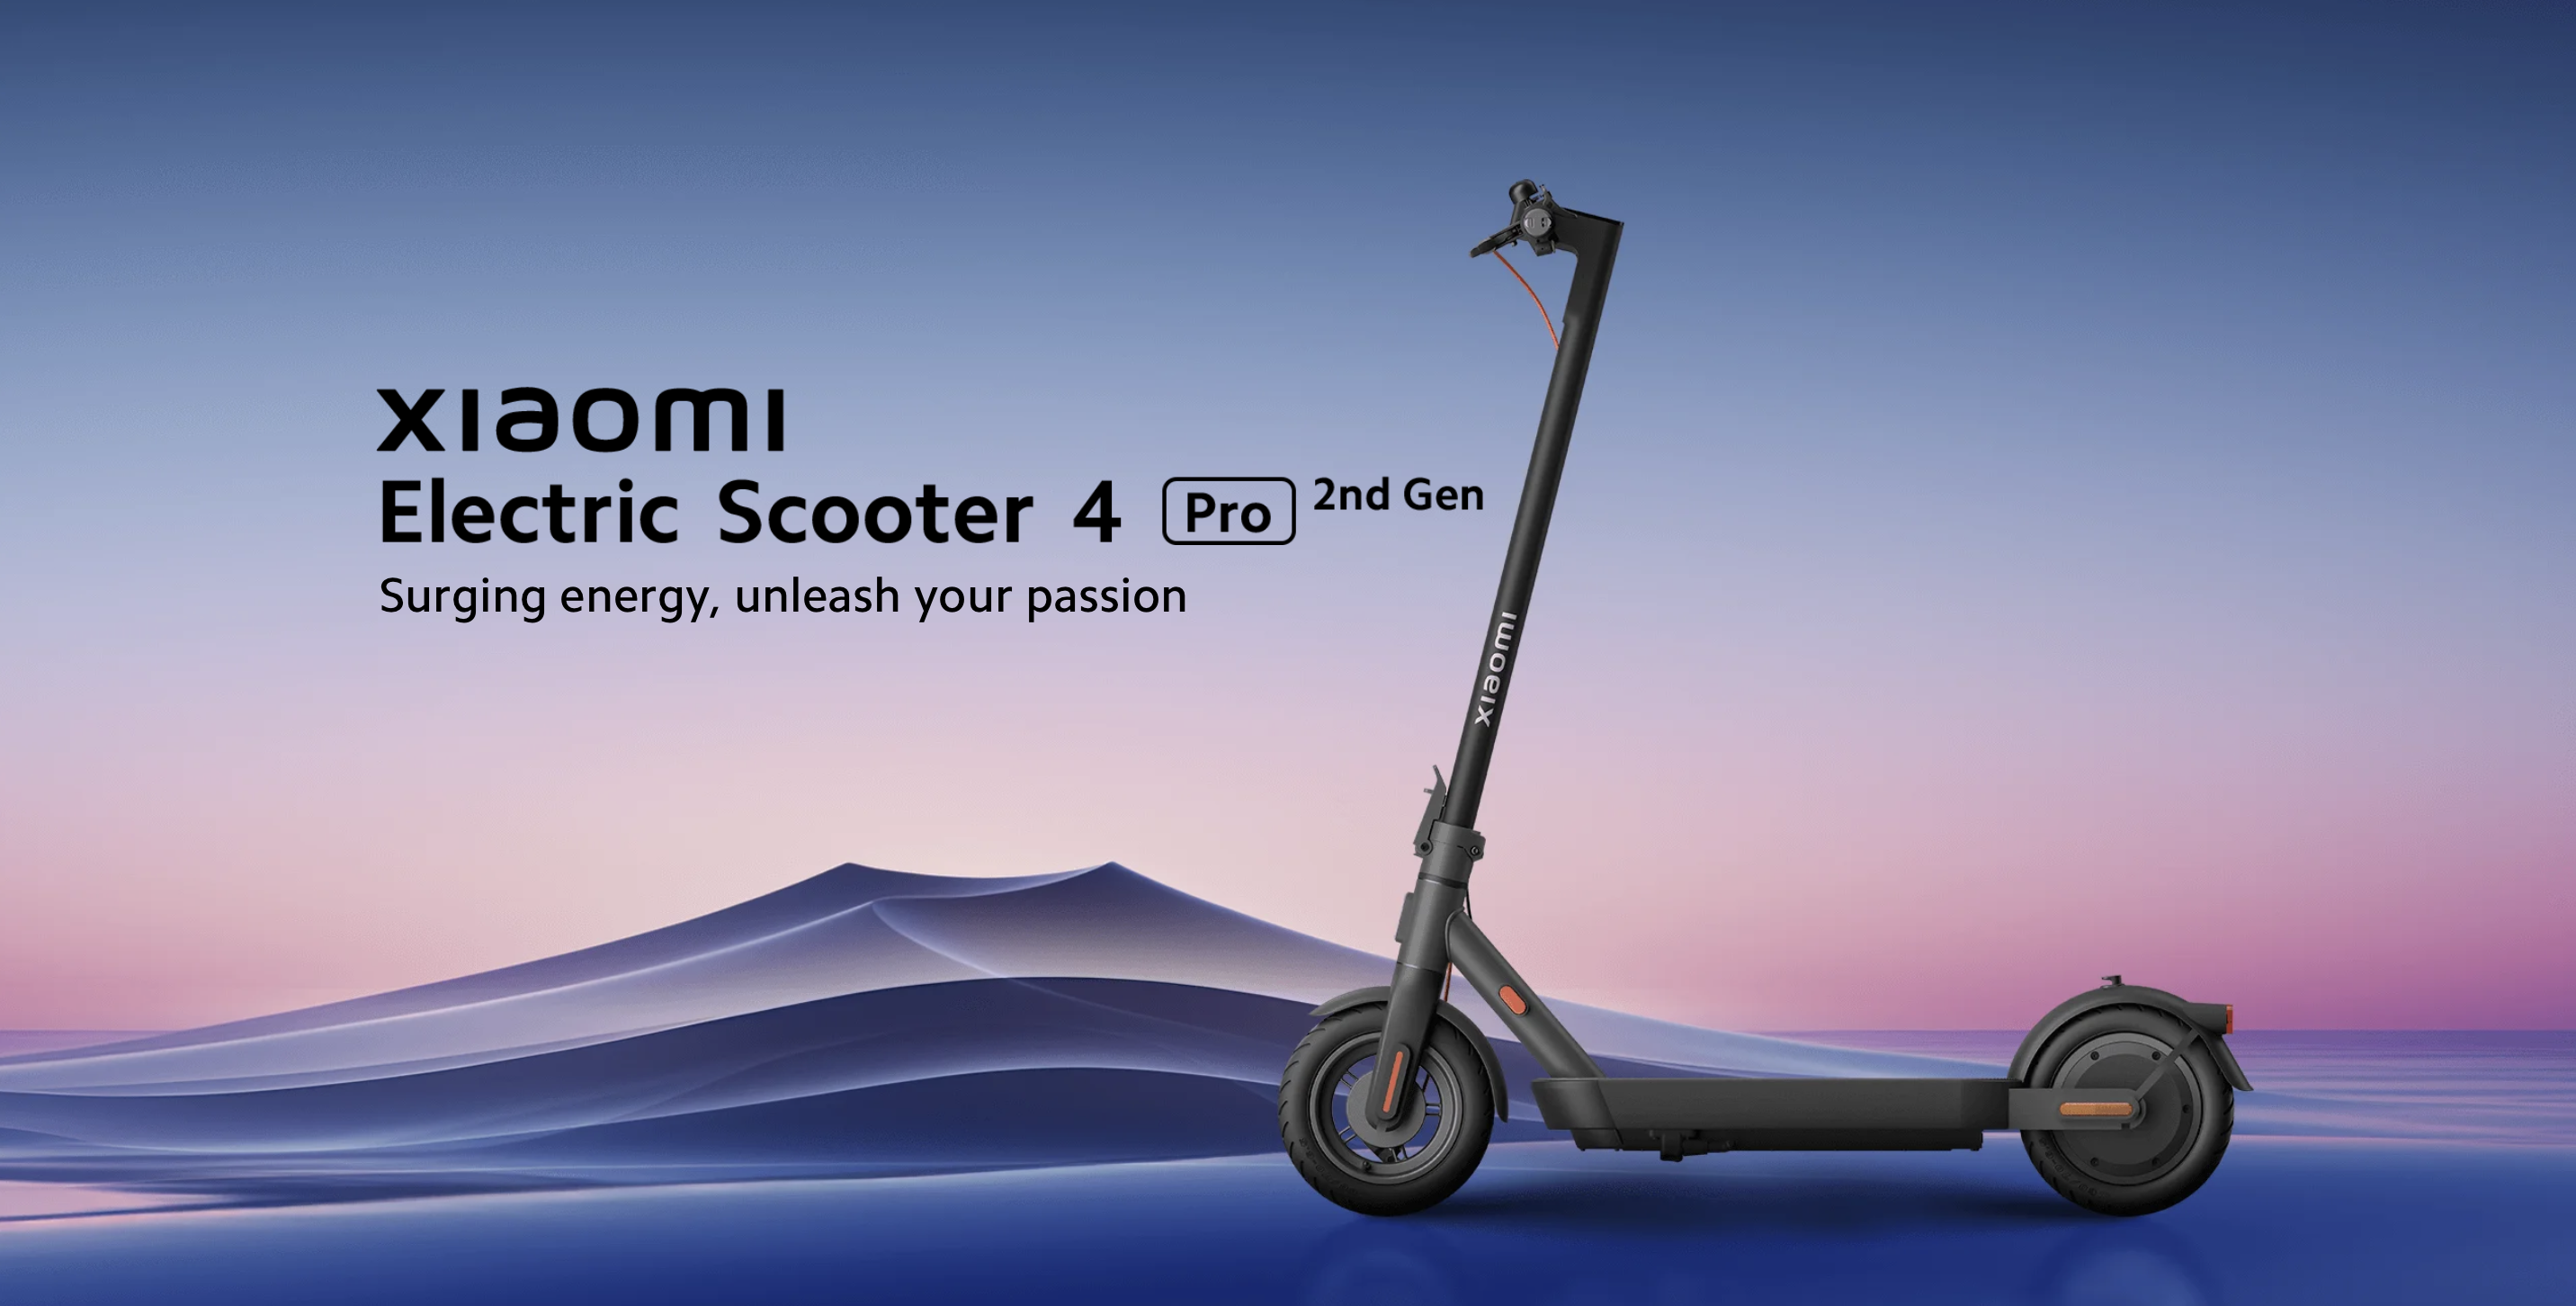 Xiaomi Electric Scooter 4 Pro (2nd Gen) med en räckvidd på upp till 60 km och en topphastighet på 25 km/h har debuterat på den globala marknaden